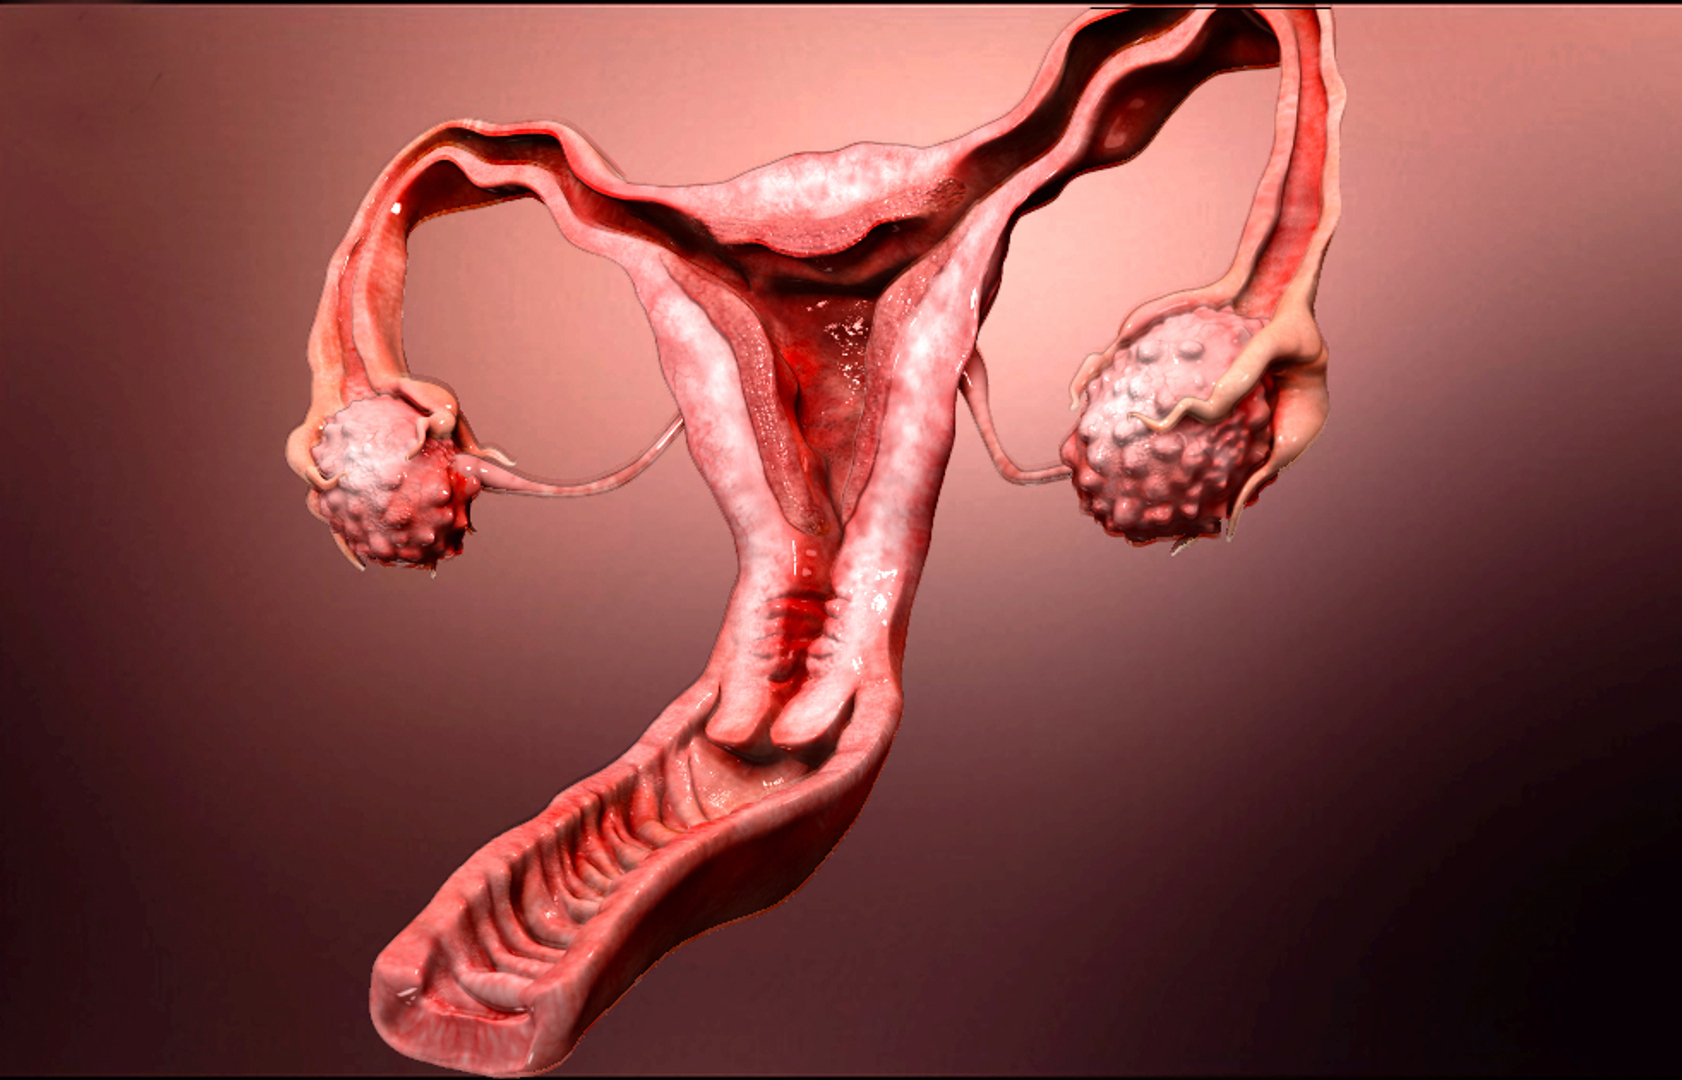 Снимки женских половых органов